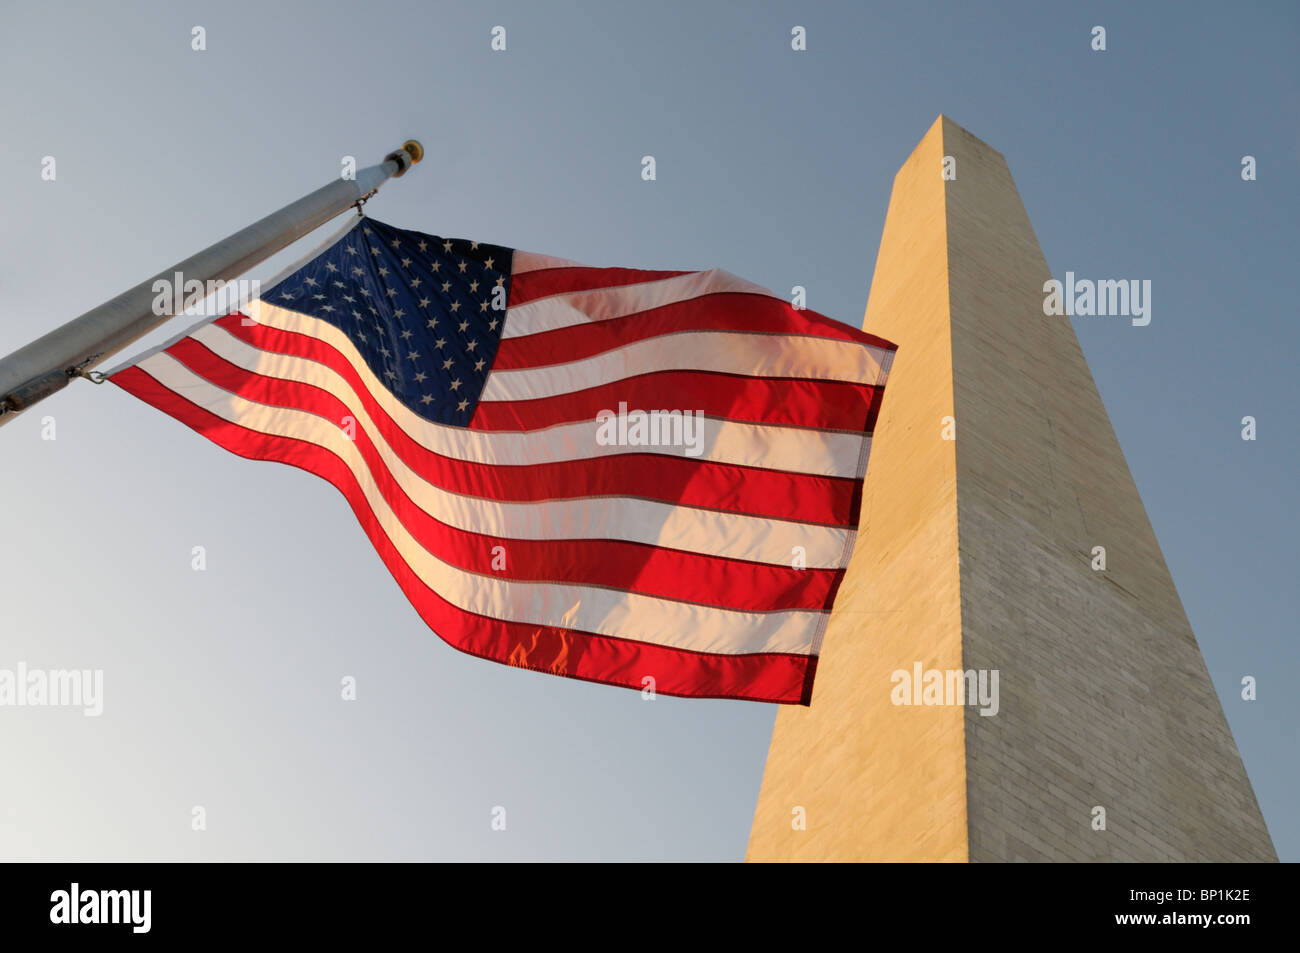 Washington monument Stock Photo